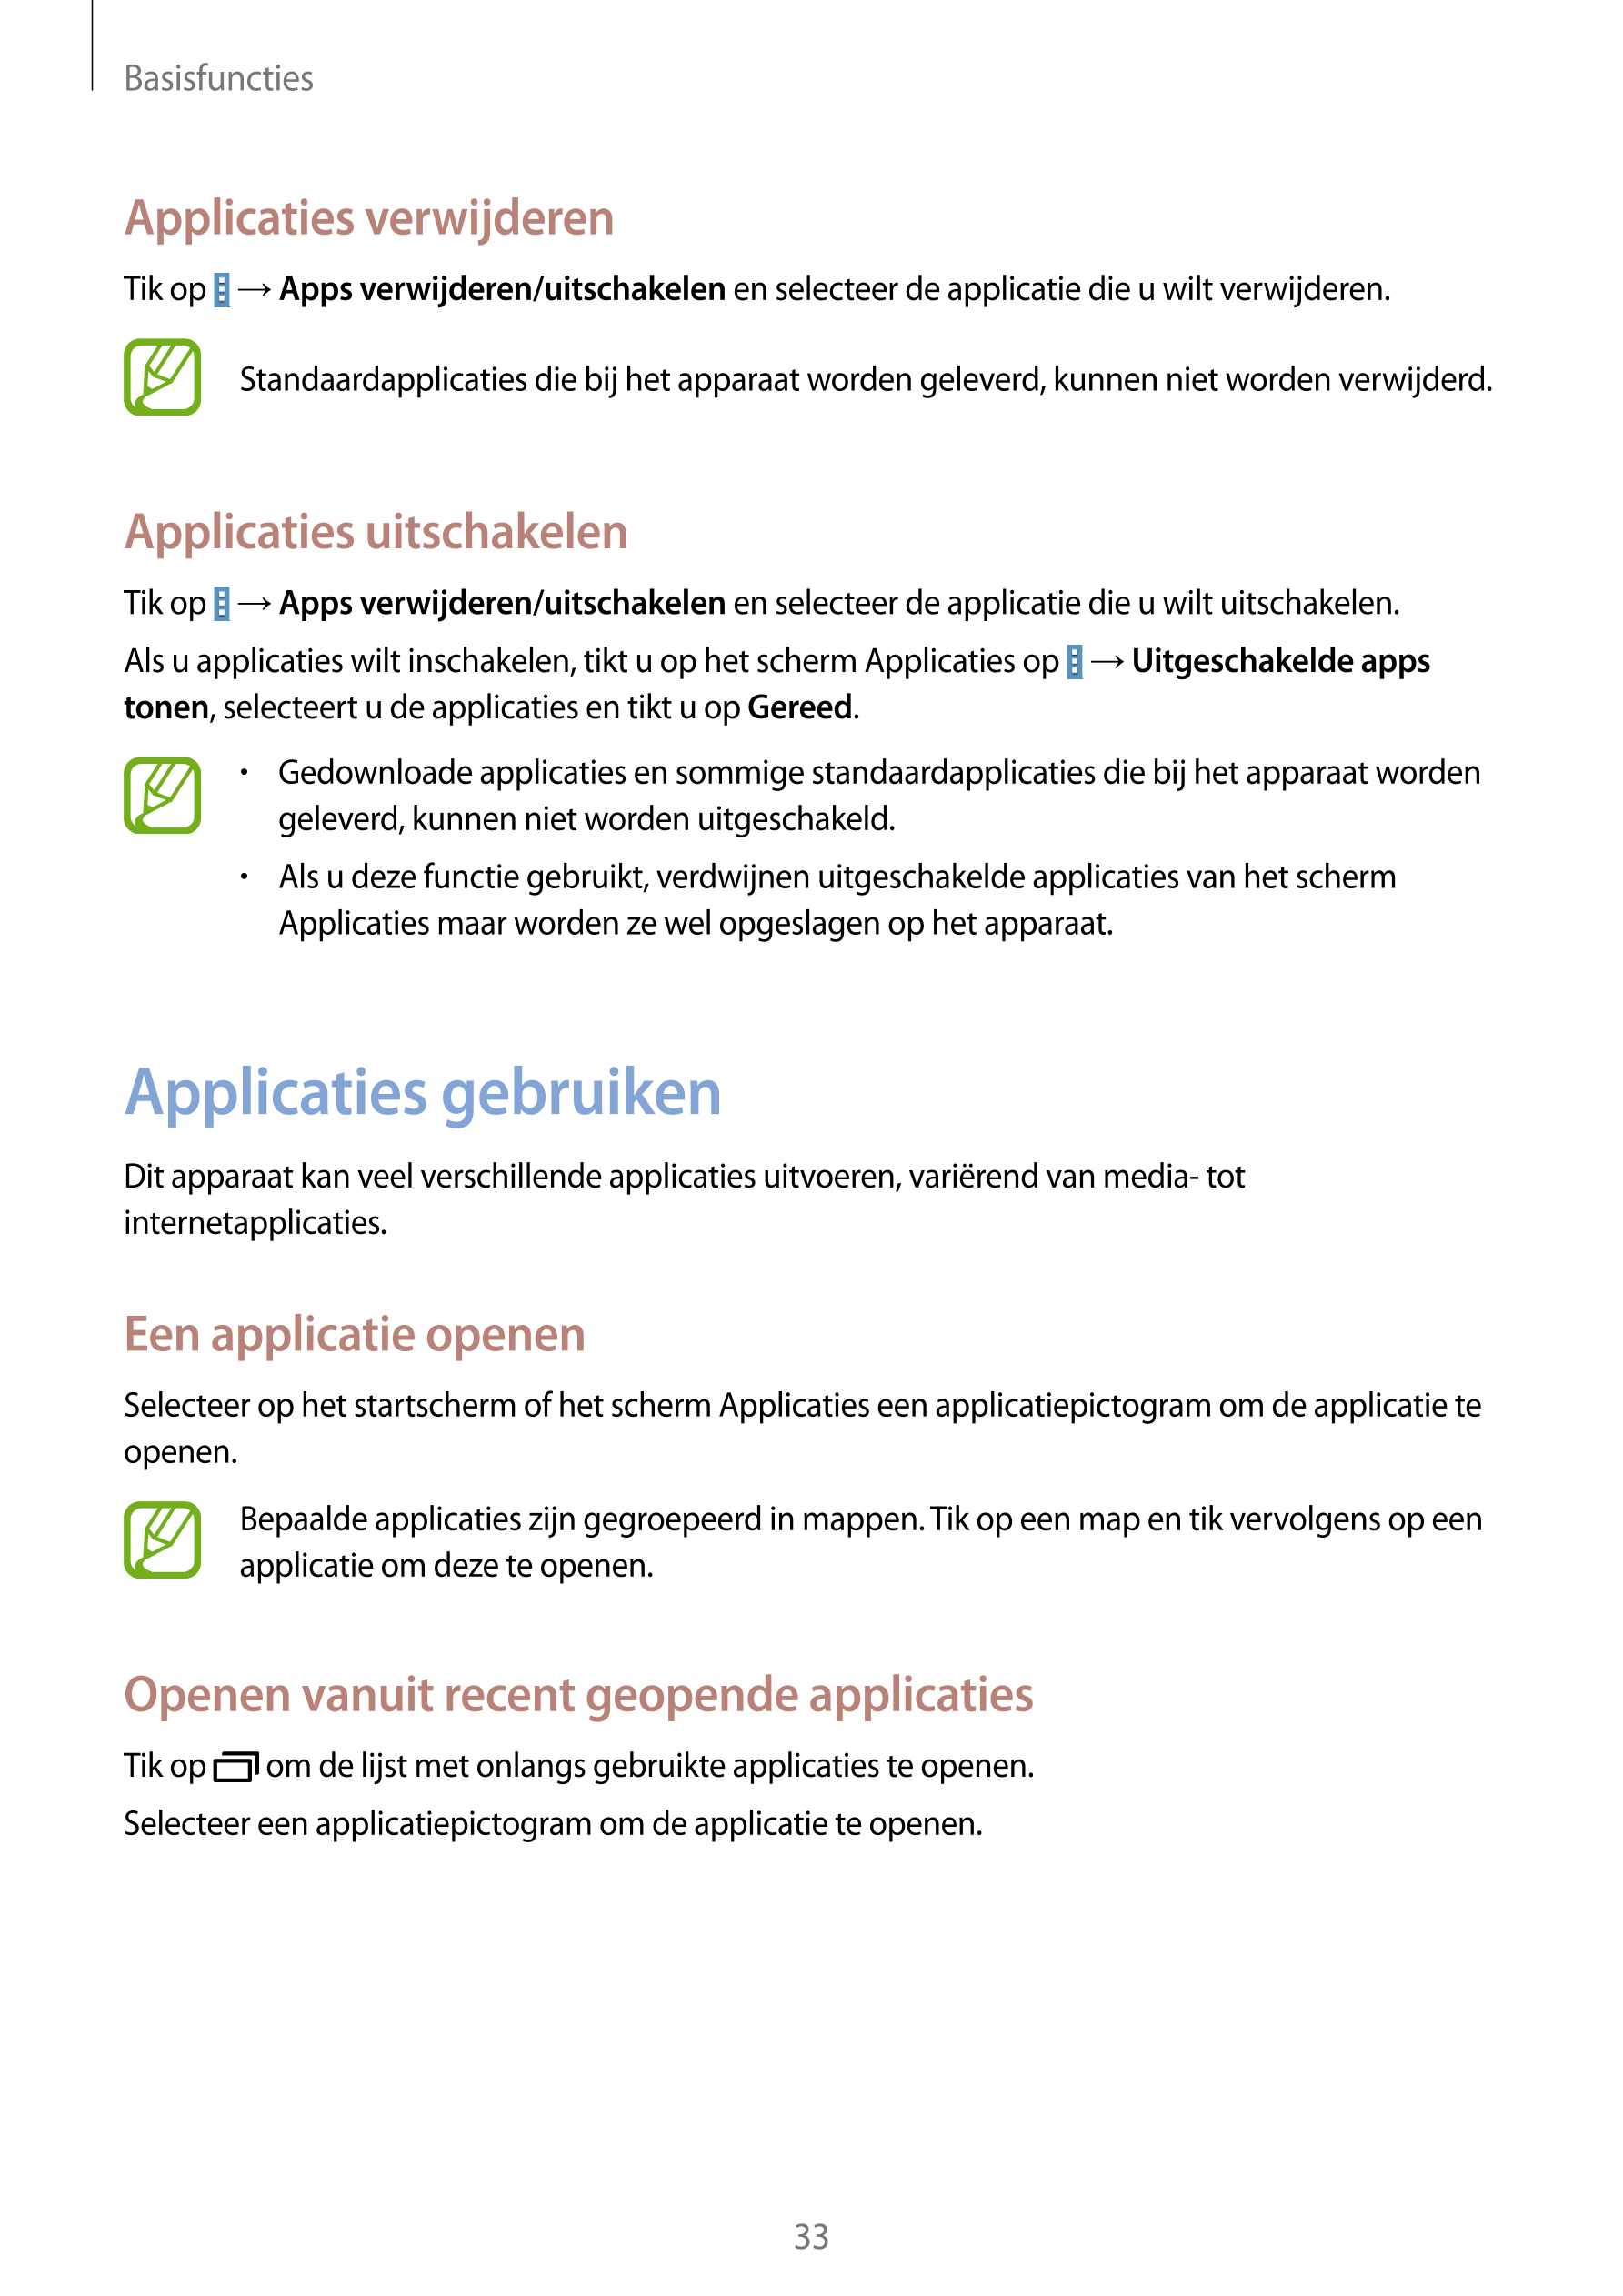 Basisfuncties
Applicaties verwijderen
Tik op    →  Apps verwijderen/uitschakelen en selecteer de applicatie die u wilt verwijder